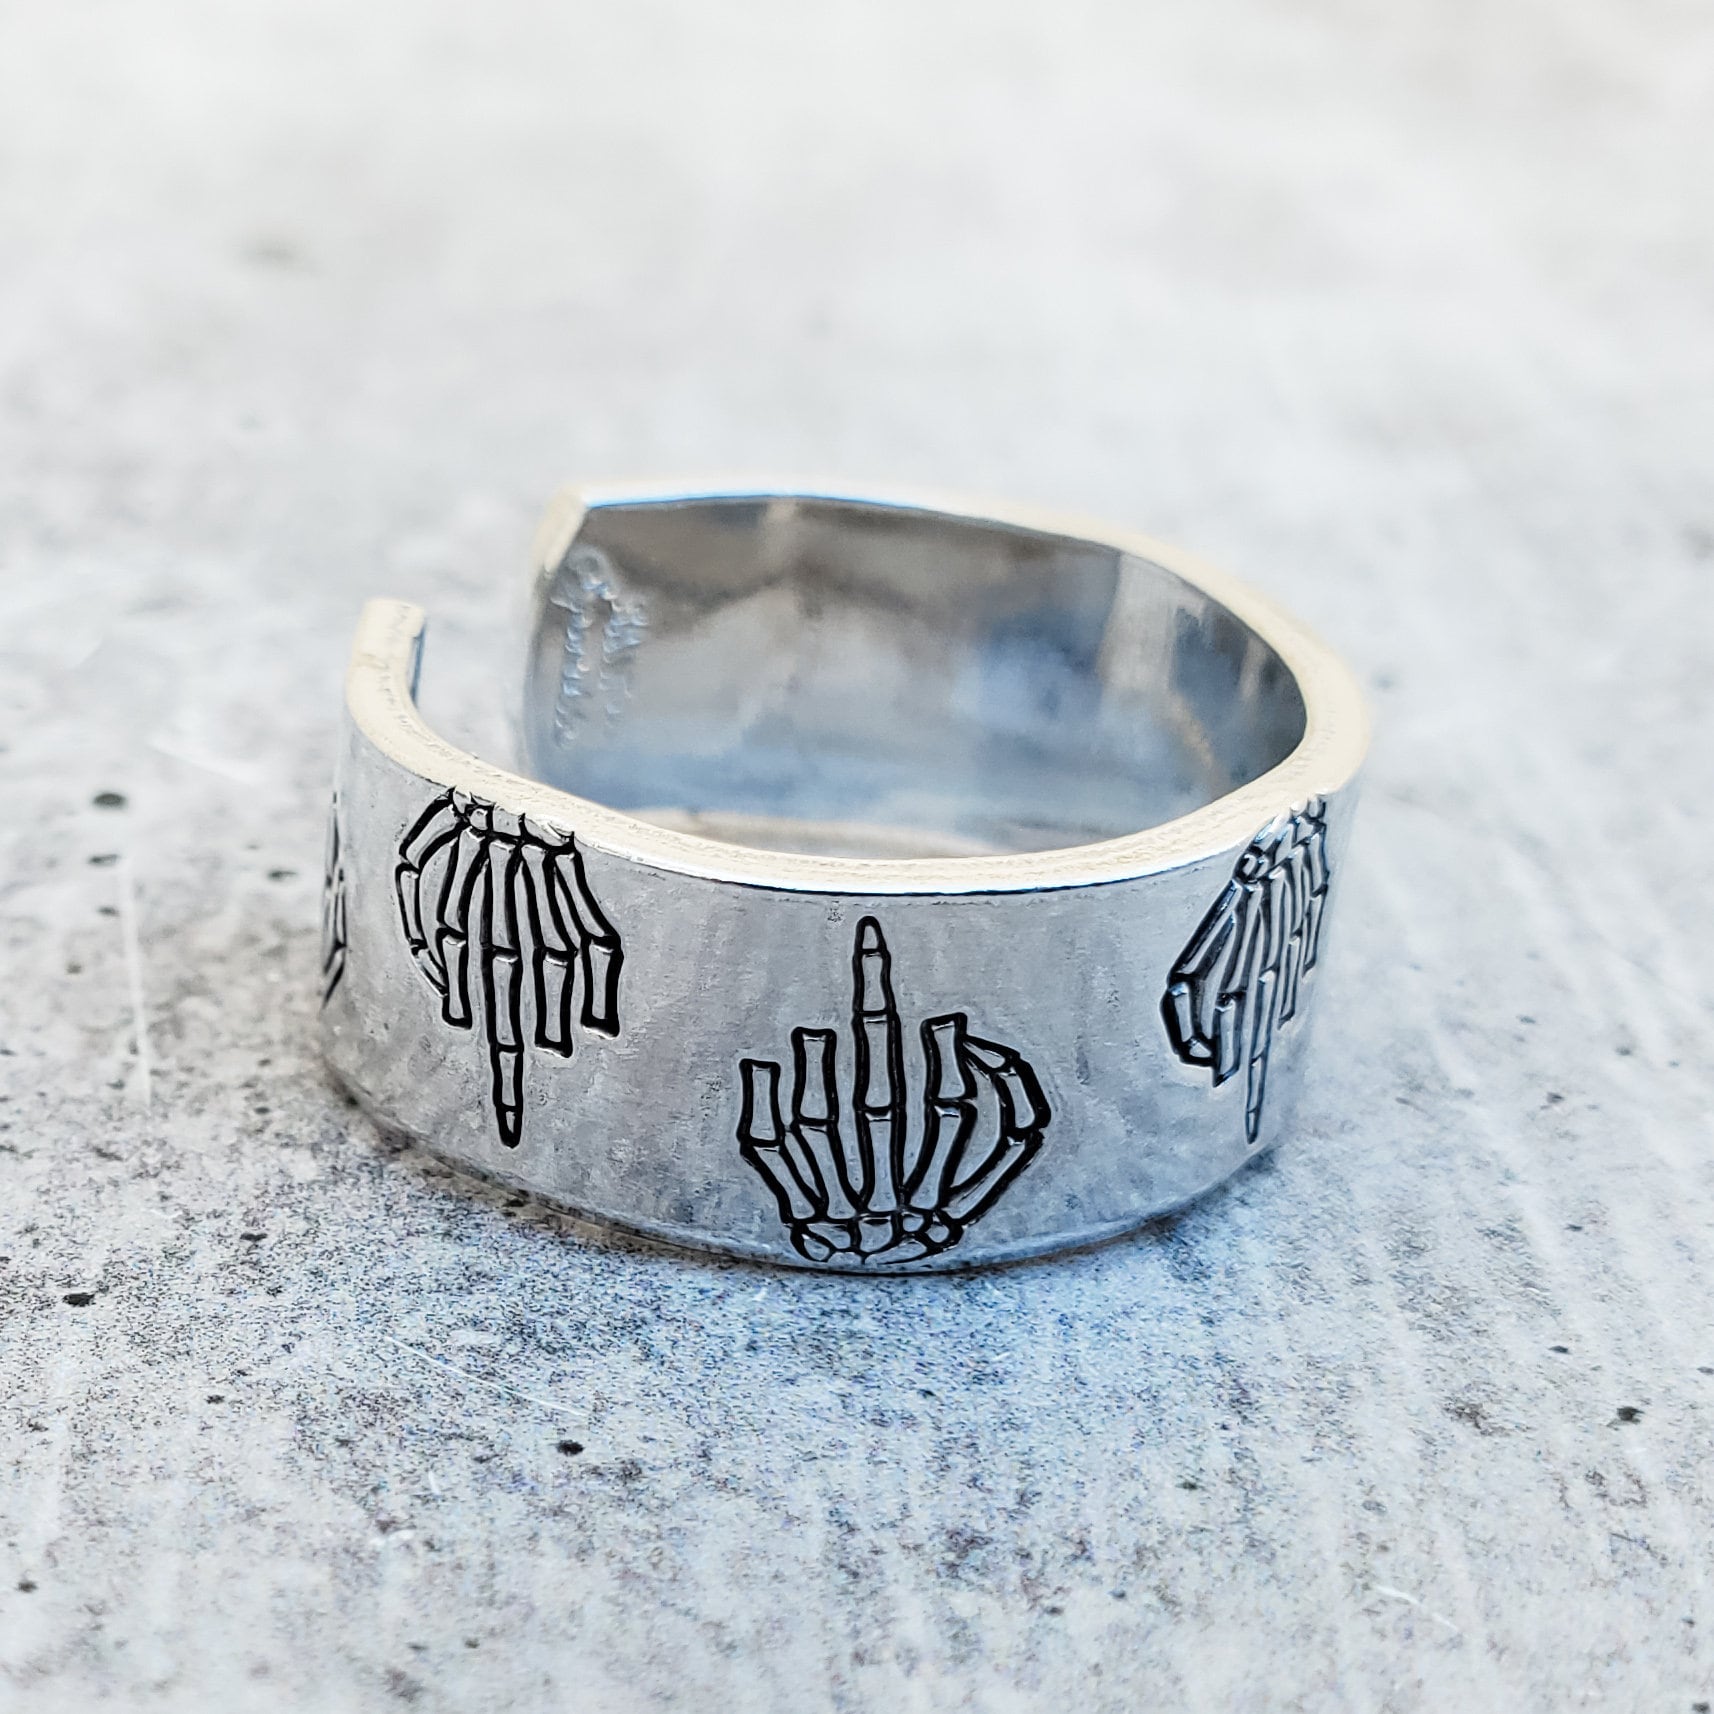 Skeleton Middle Finger Ring - Halloween Gag Gift - Funny Ring for Spooky Season - Gender Neutral Middle Finger Band Ring for Halloween Lover